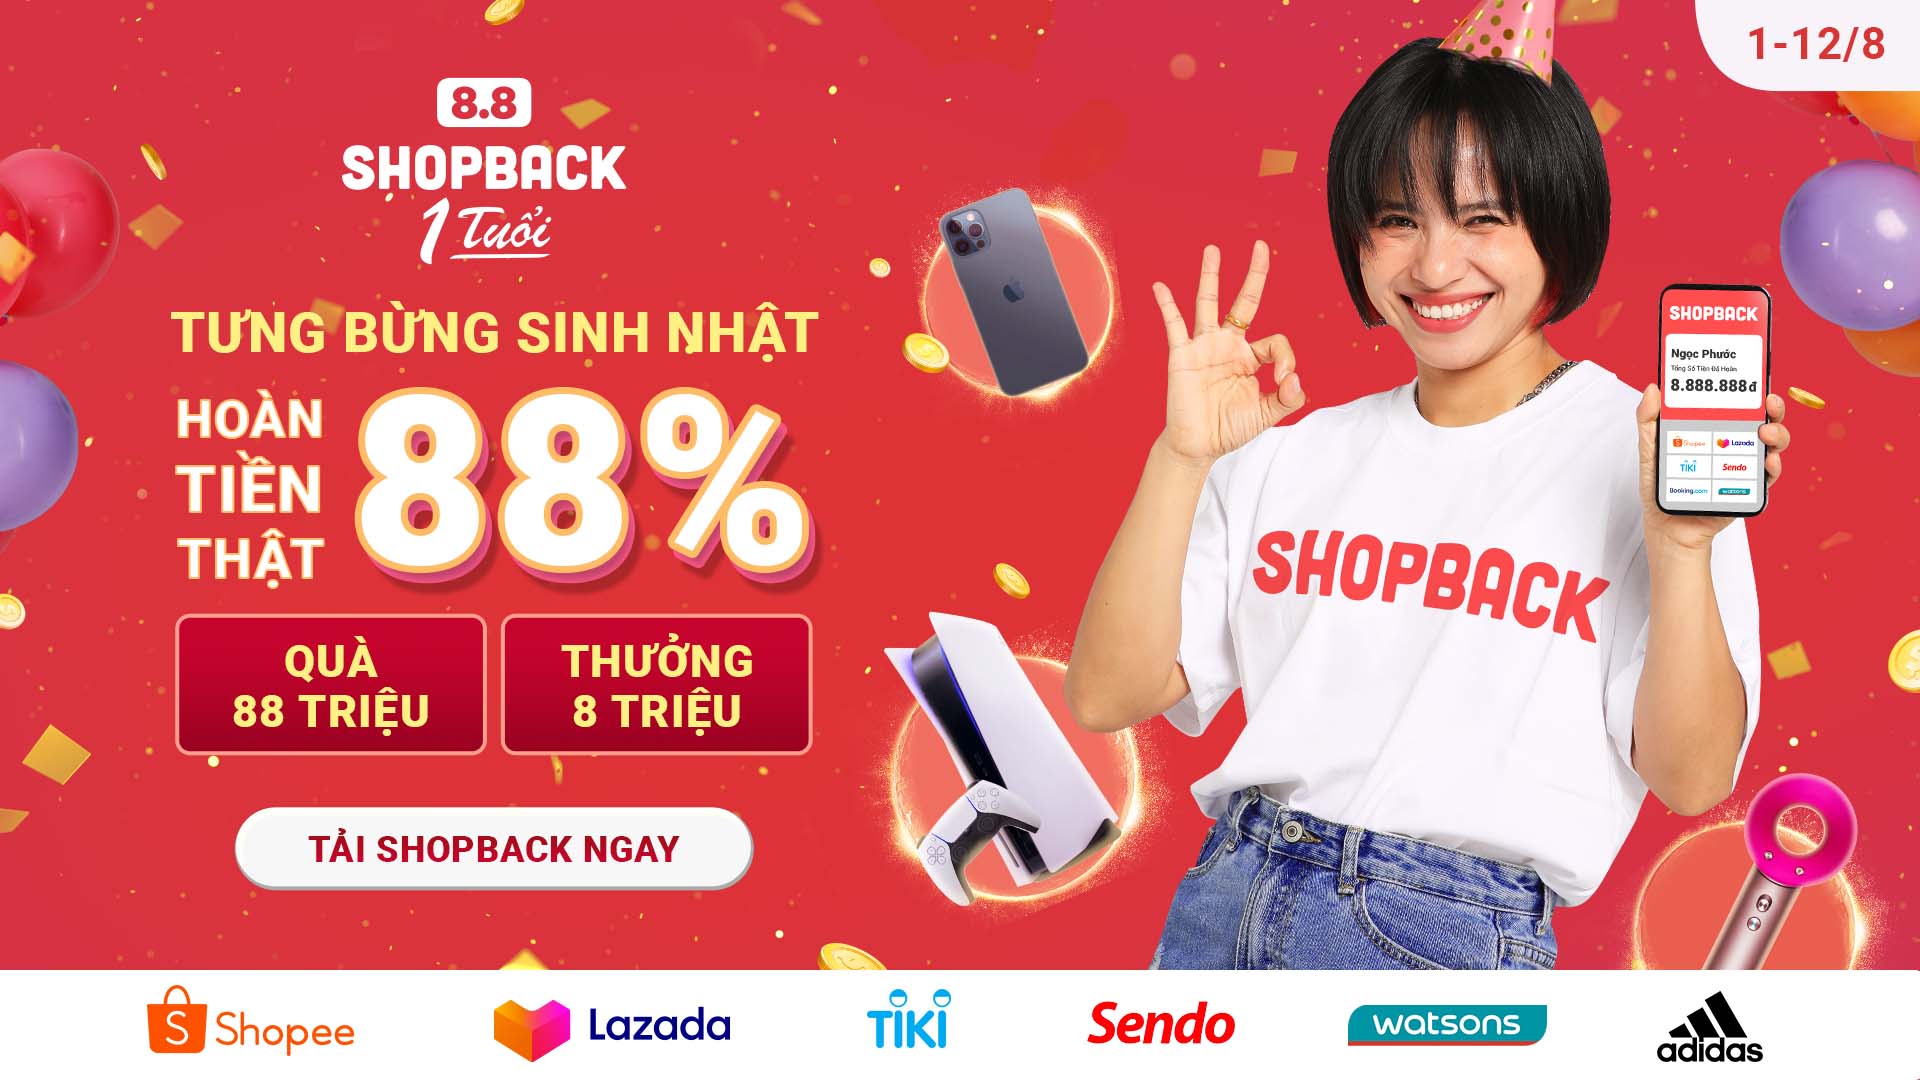 ShopBack Việt Nam kỷ niệm một năm hoạt động với chương trình hoàn tiền khủng đến 88%